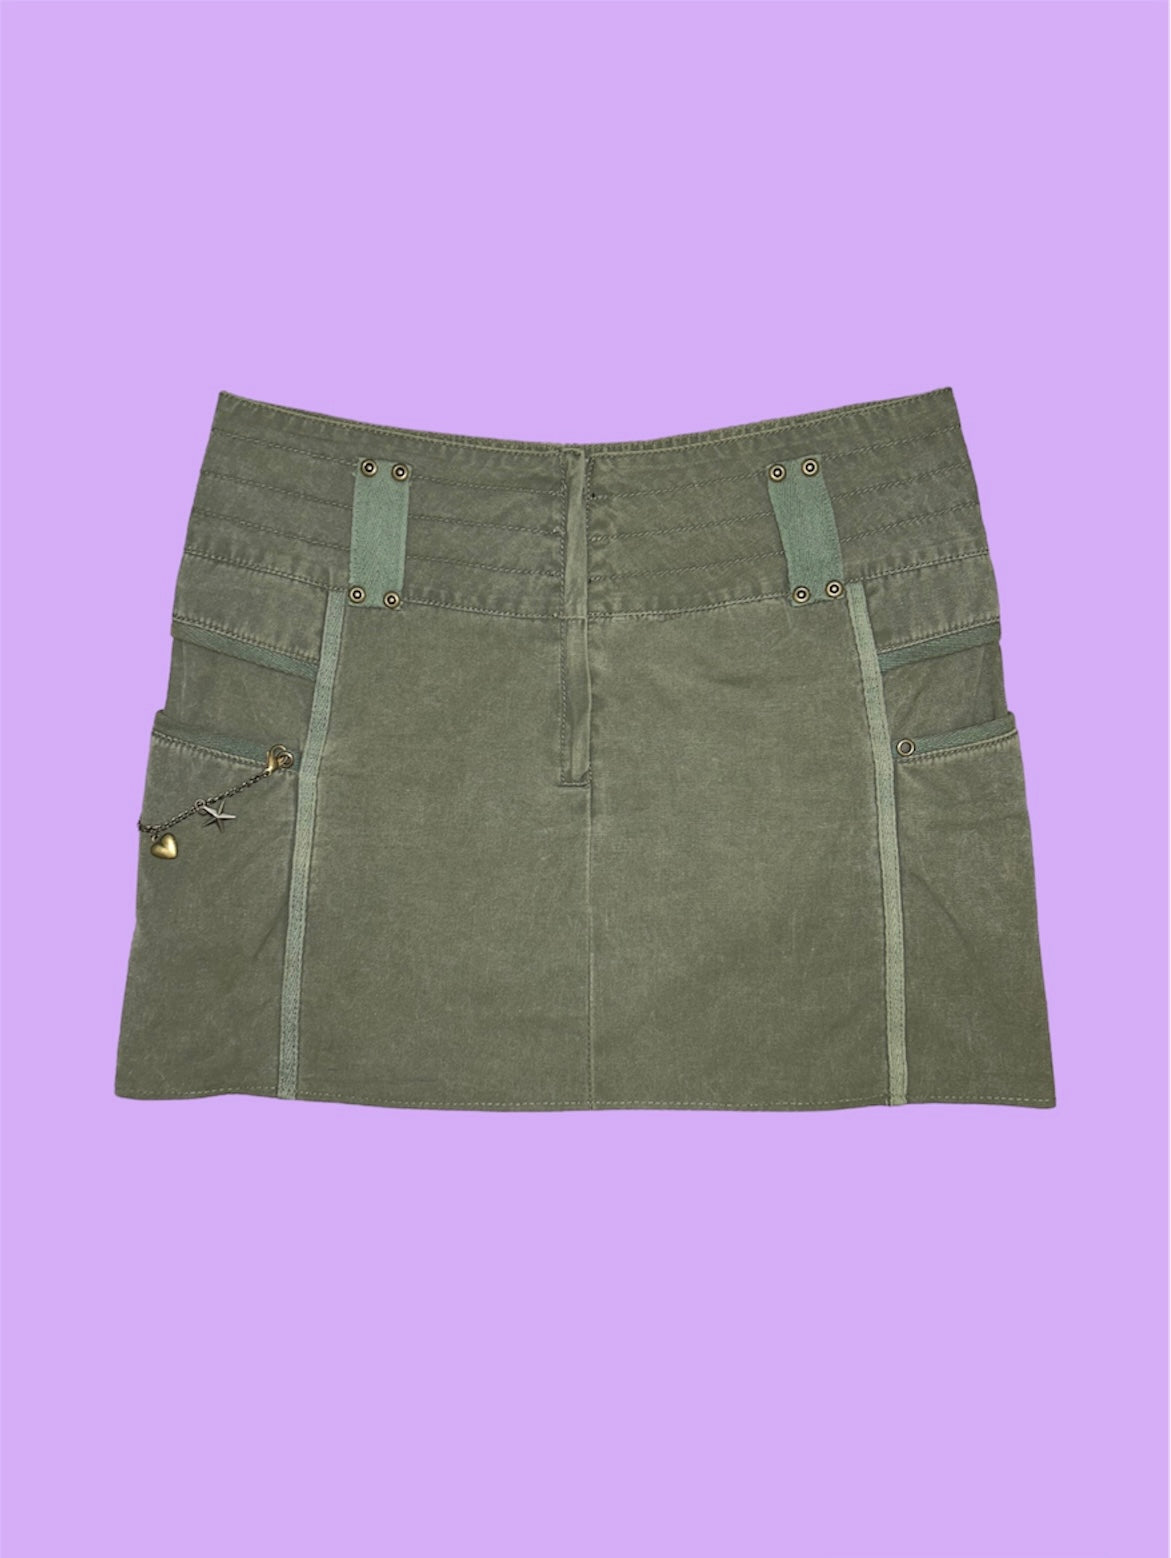 khaki mini cargo skirt shown on a lilac background